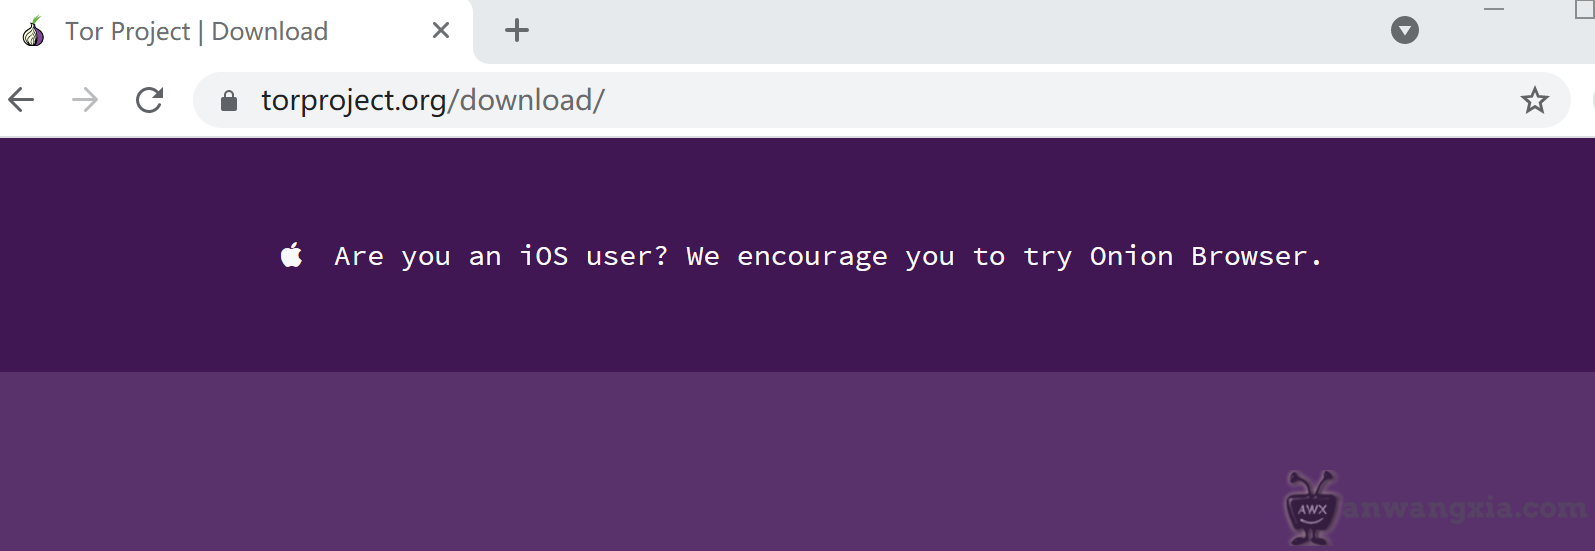 Tor browser для ios скачать бесплатно hyrda вход купить коноплю промышленную в белоруссии